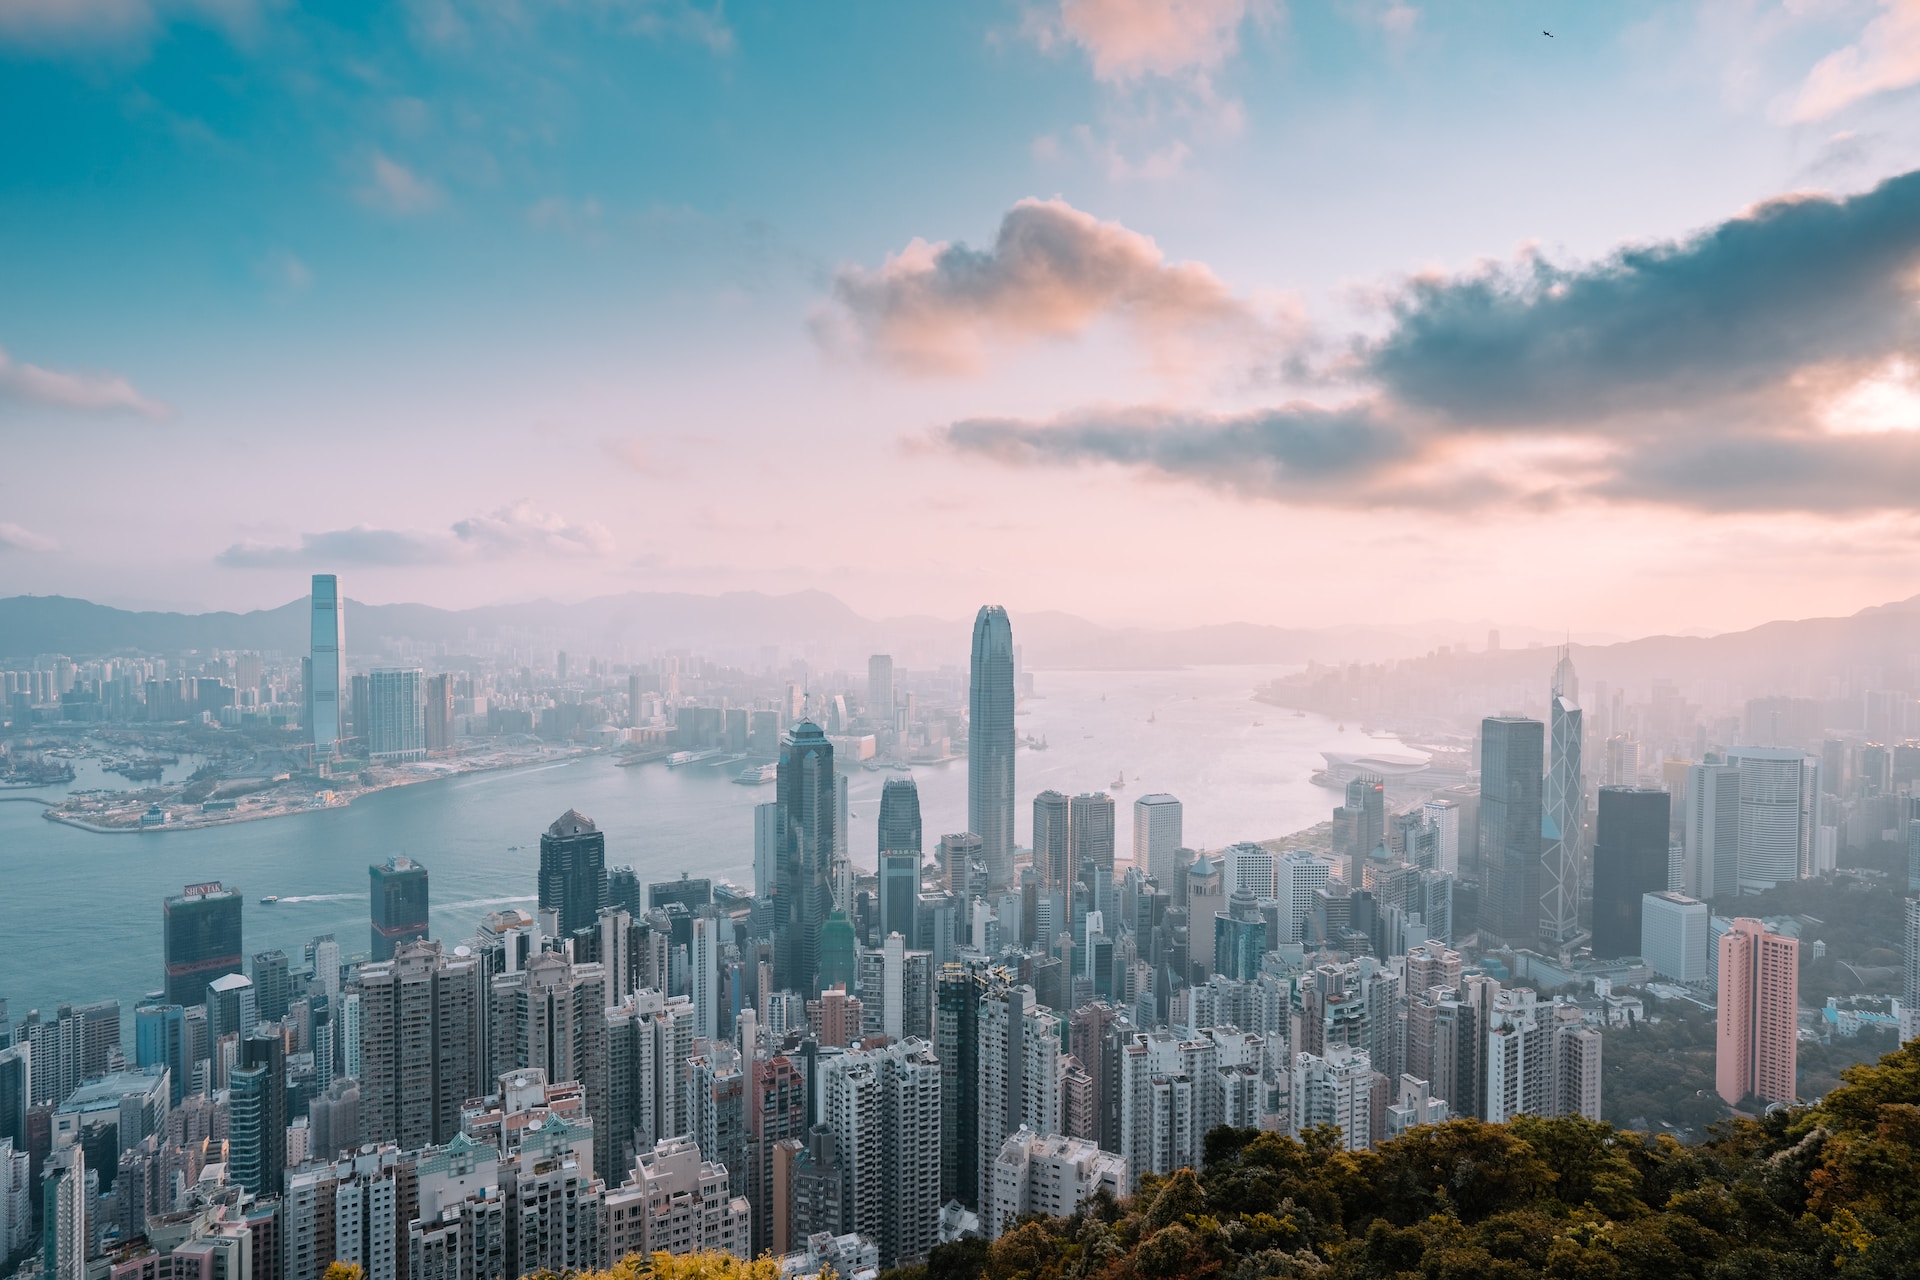 Du lịch Hong Kong mùa nào đẹp nhất cho chuyến đi đáng nhớ?